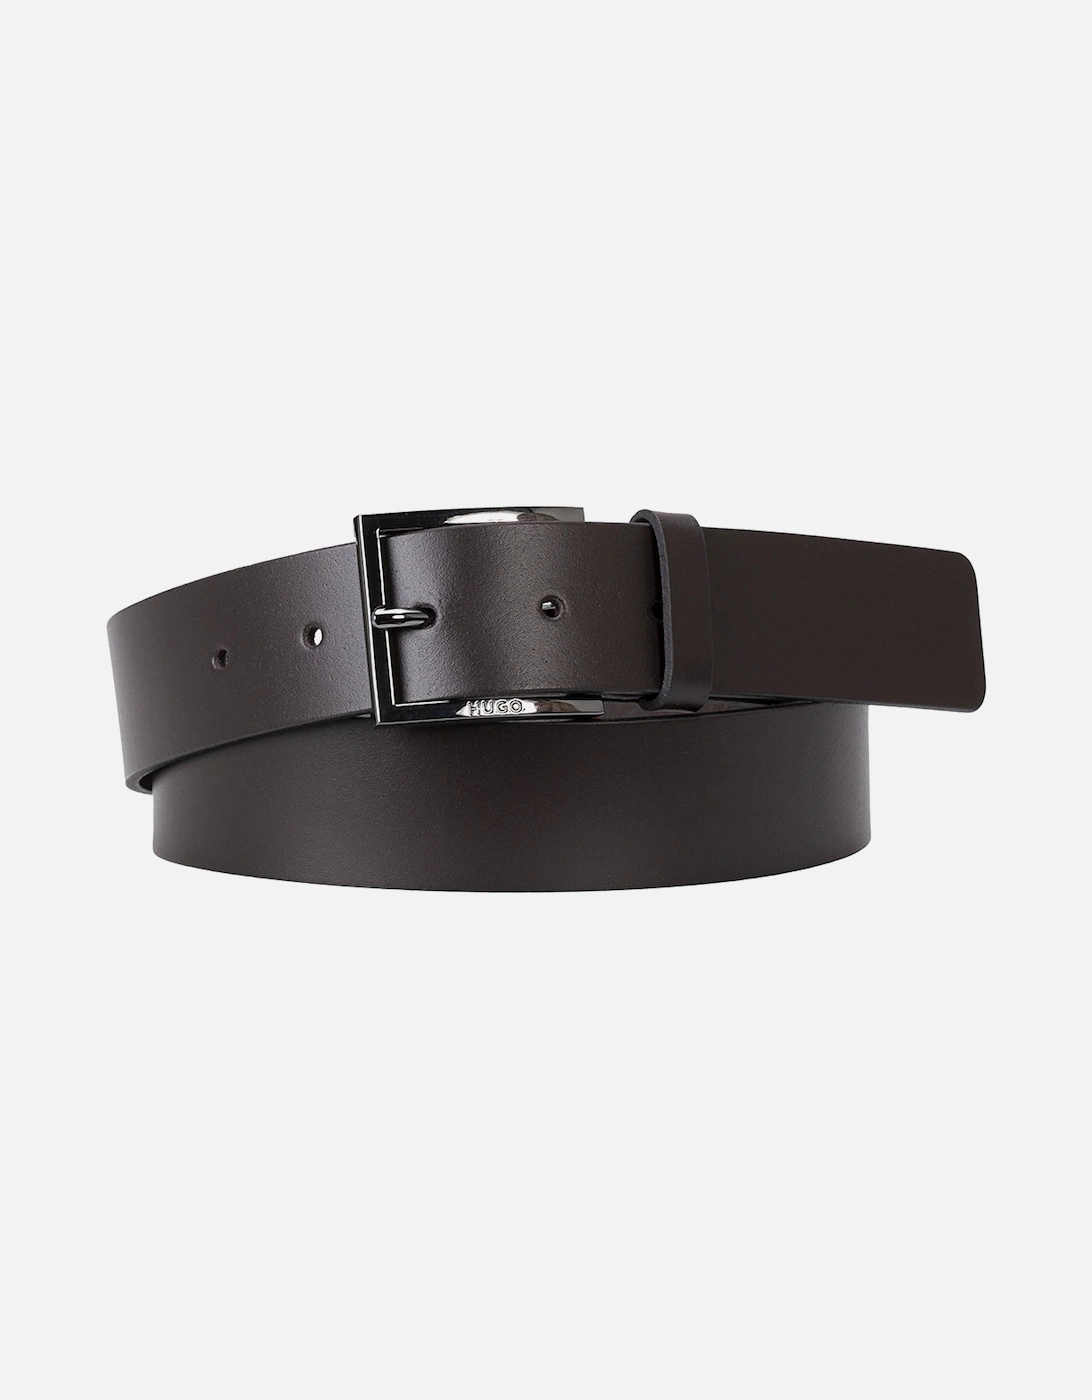 Geek Smooth Leather Belt, Dark Brown, 3 of 2